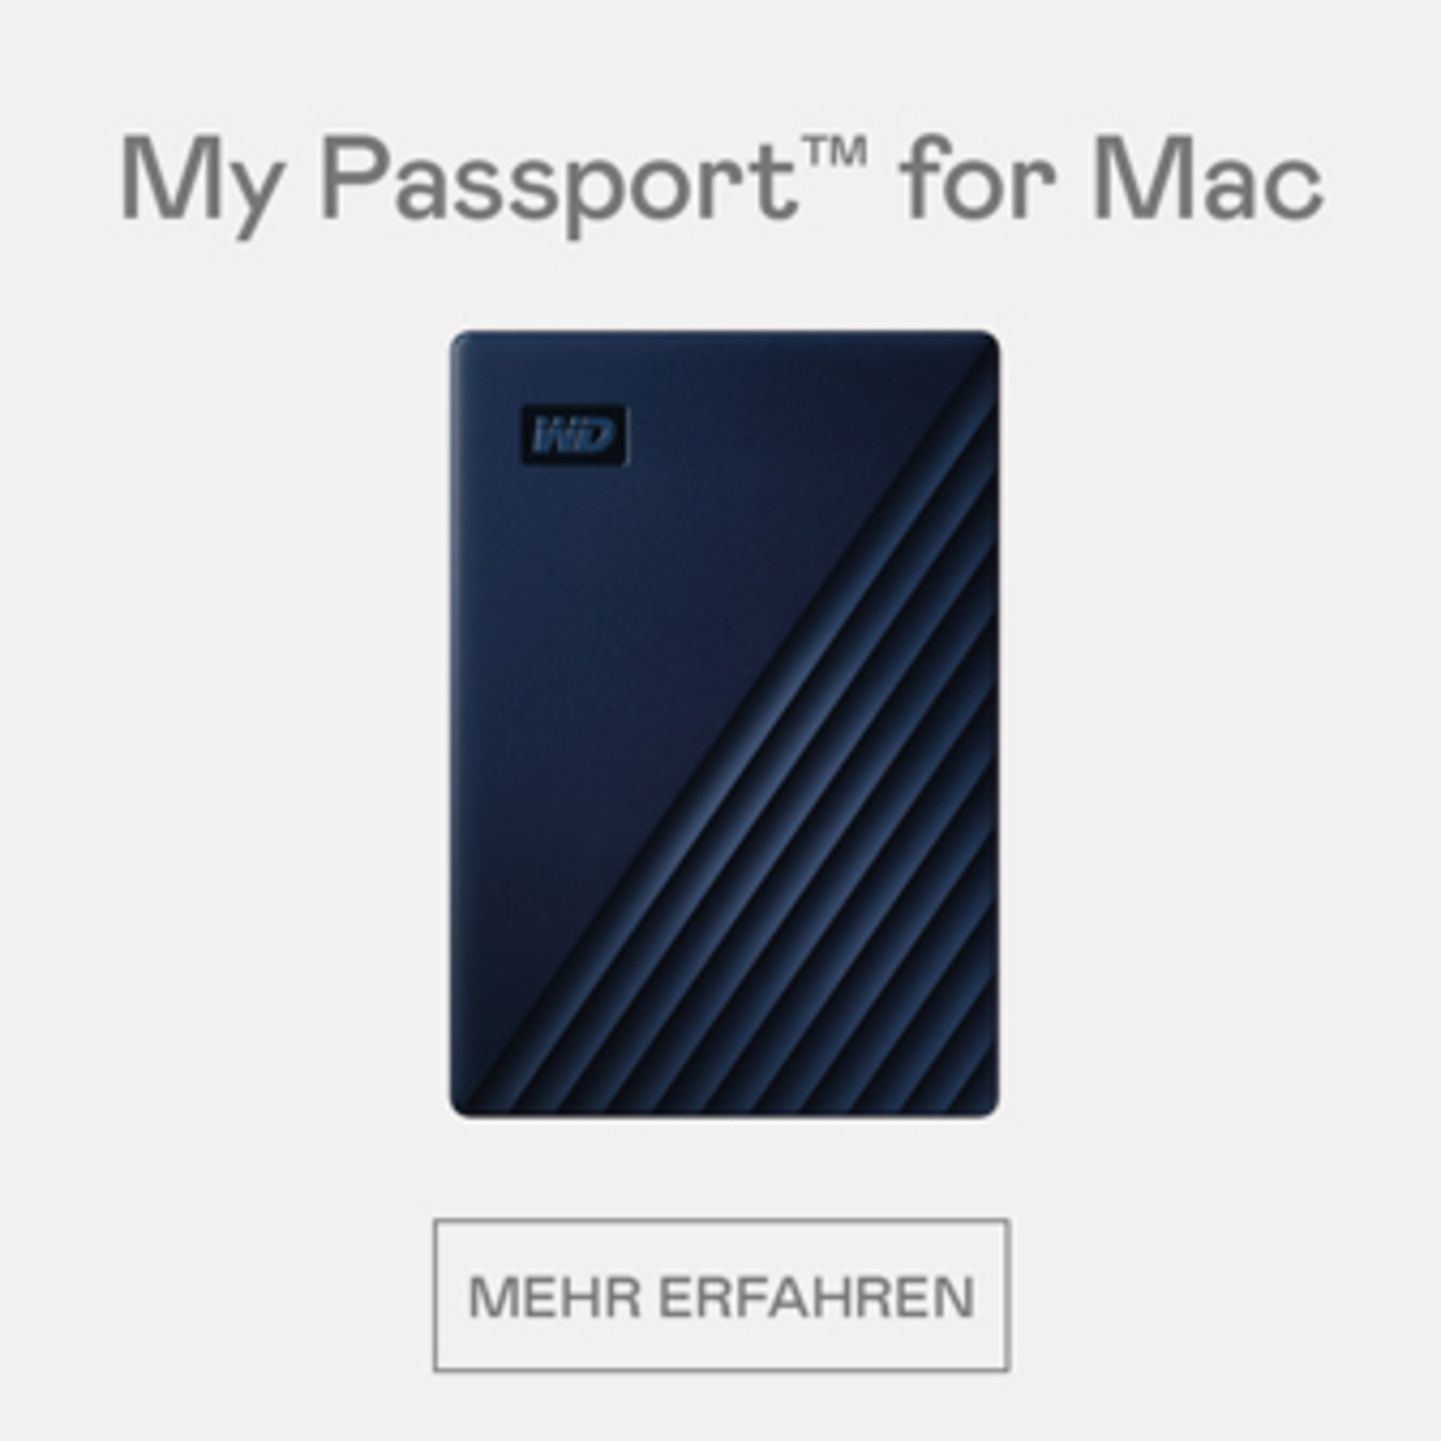 My Passport for Mac